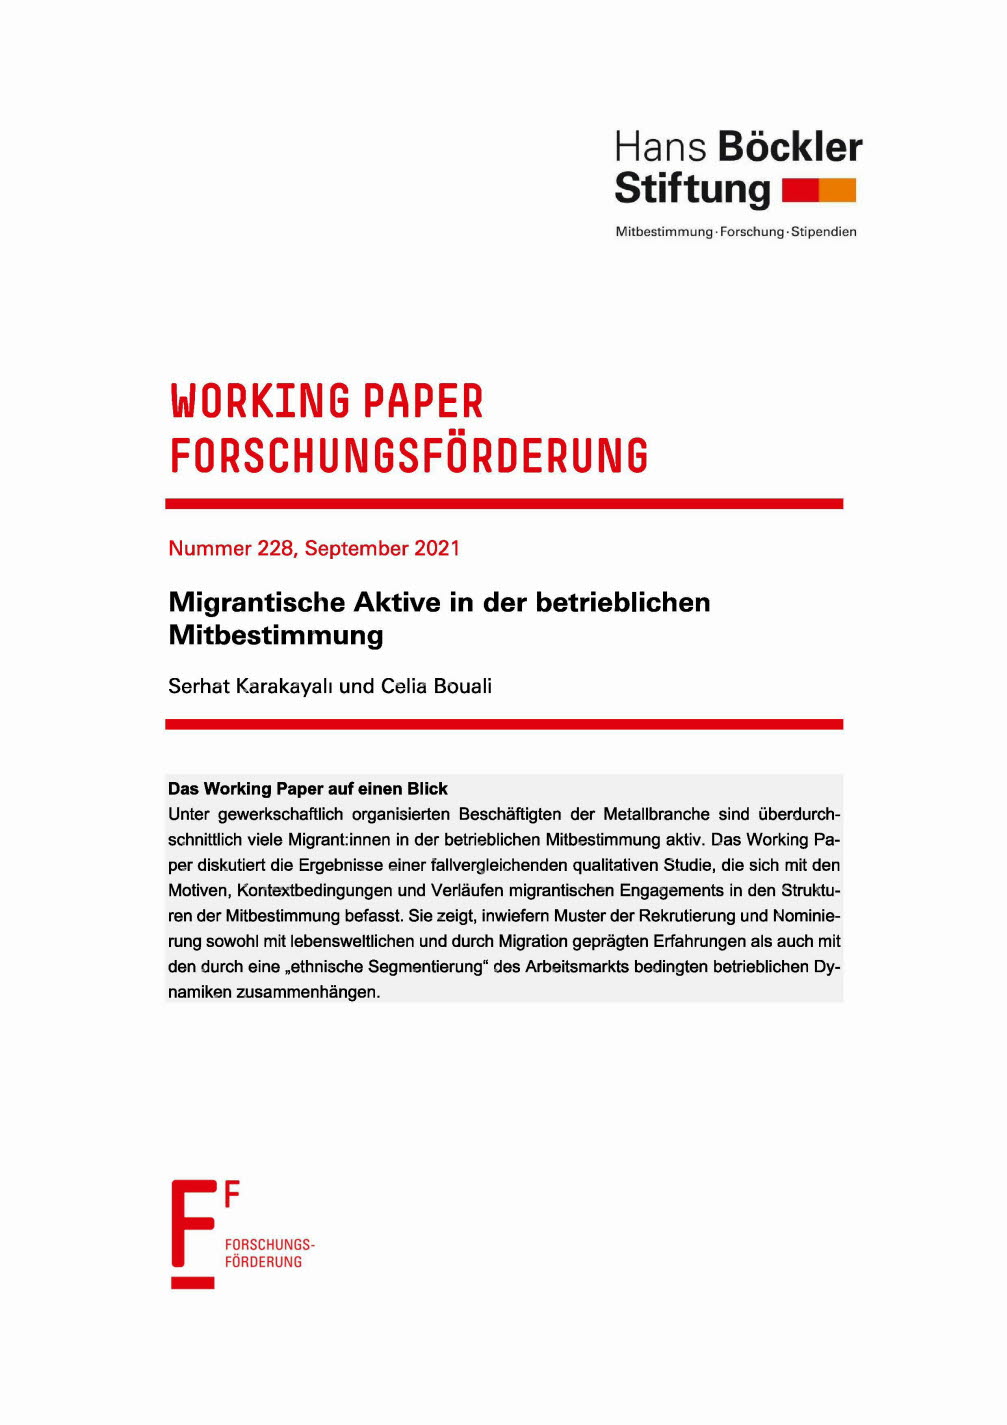 Migrantische Aktive in der betrieblichen Mitbestimmung